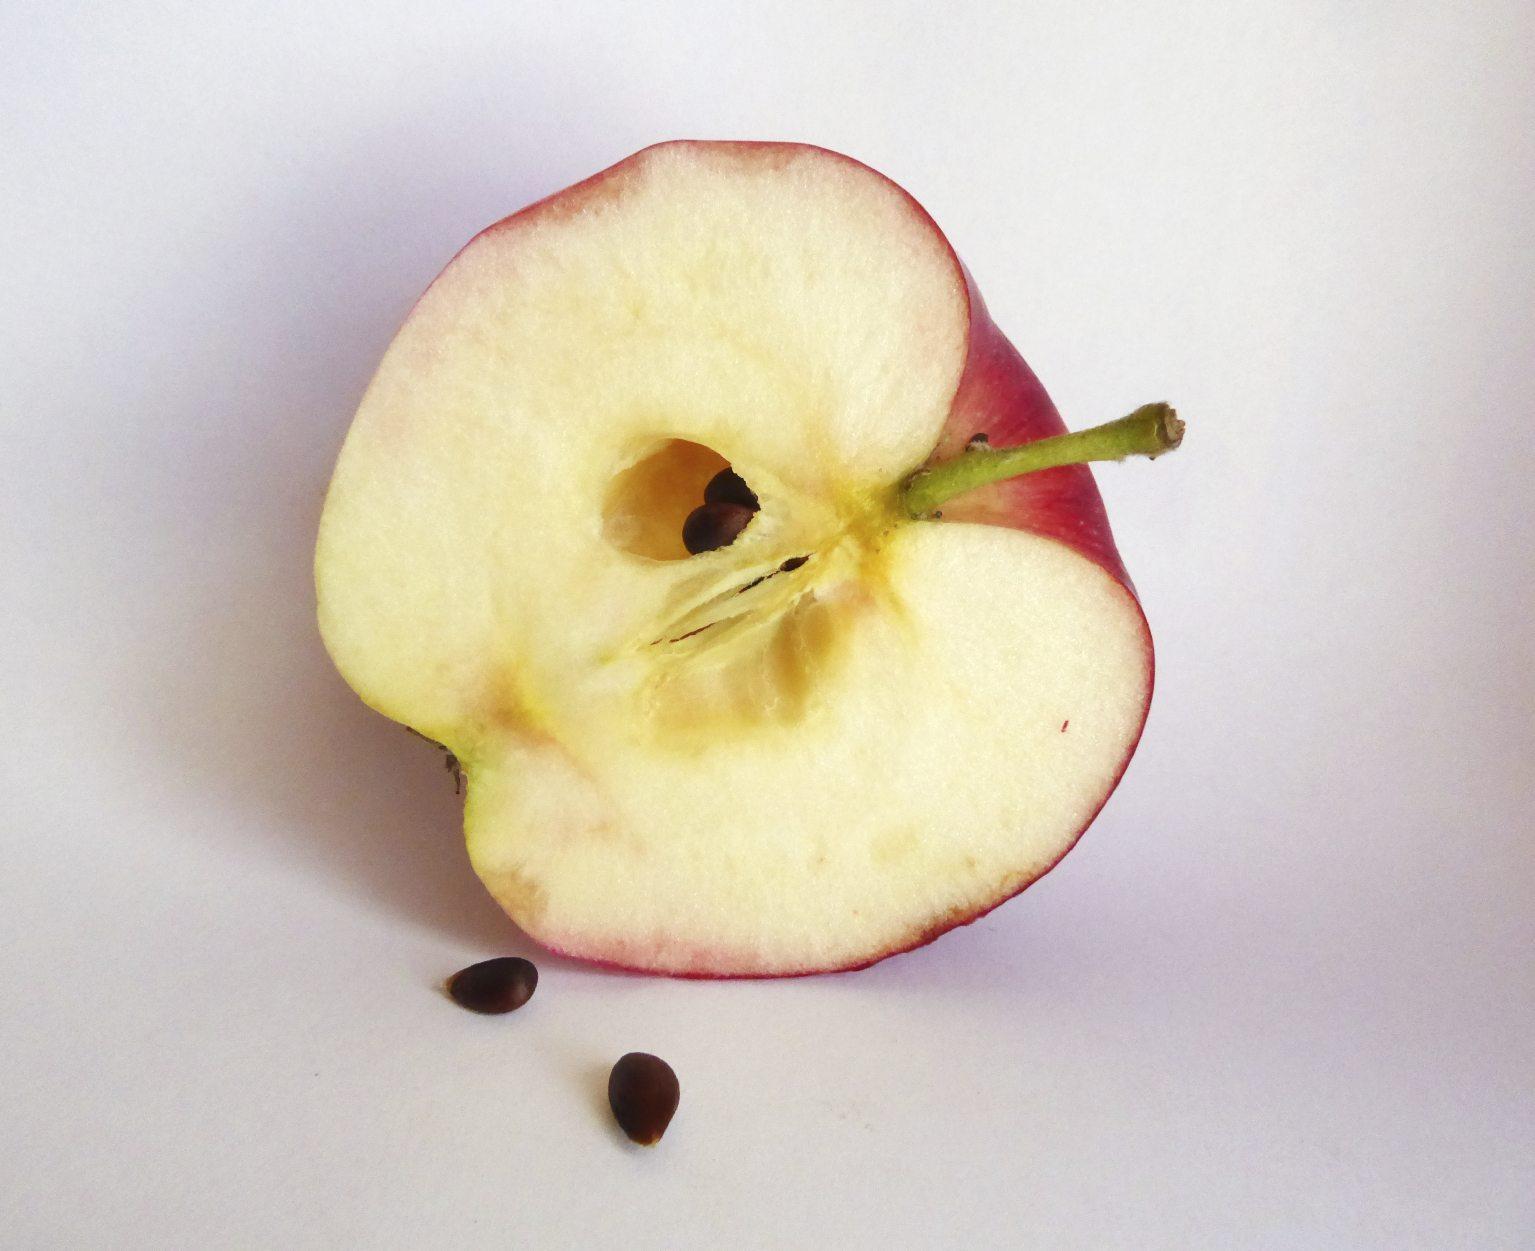 Яблоко съедобная. Яблочные семена. Яблочные косточки. Семечко яблока. Семена яблока в разрезе.